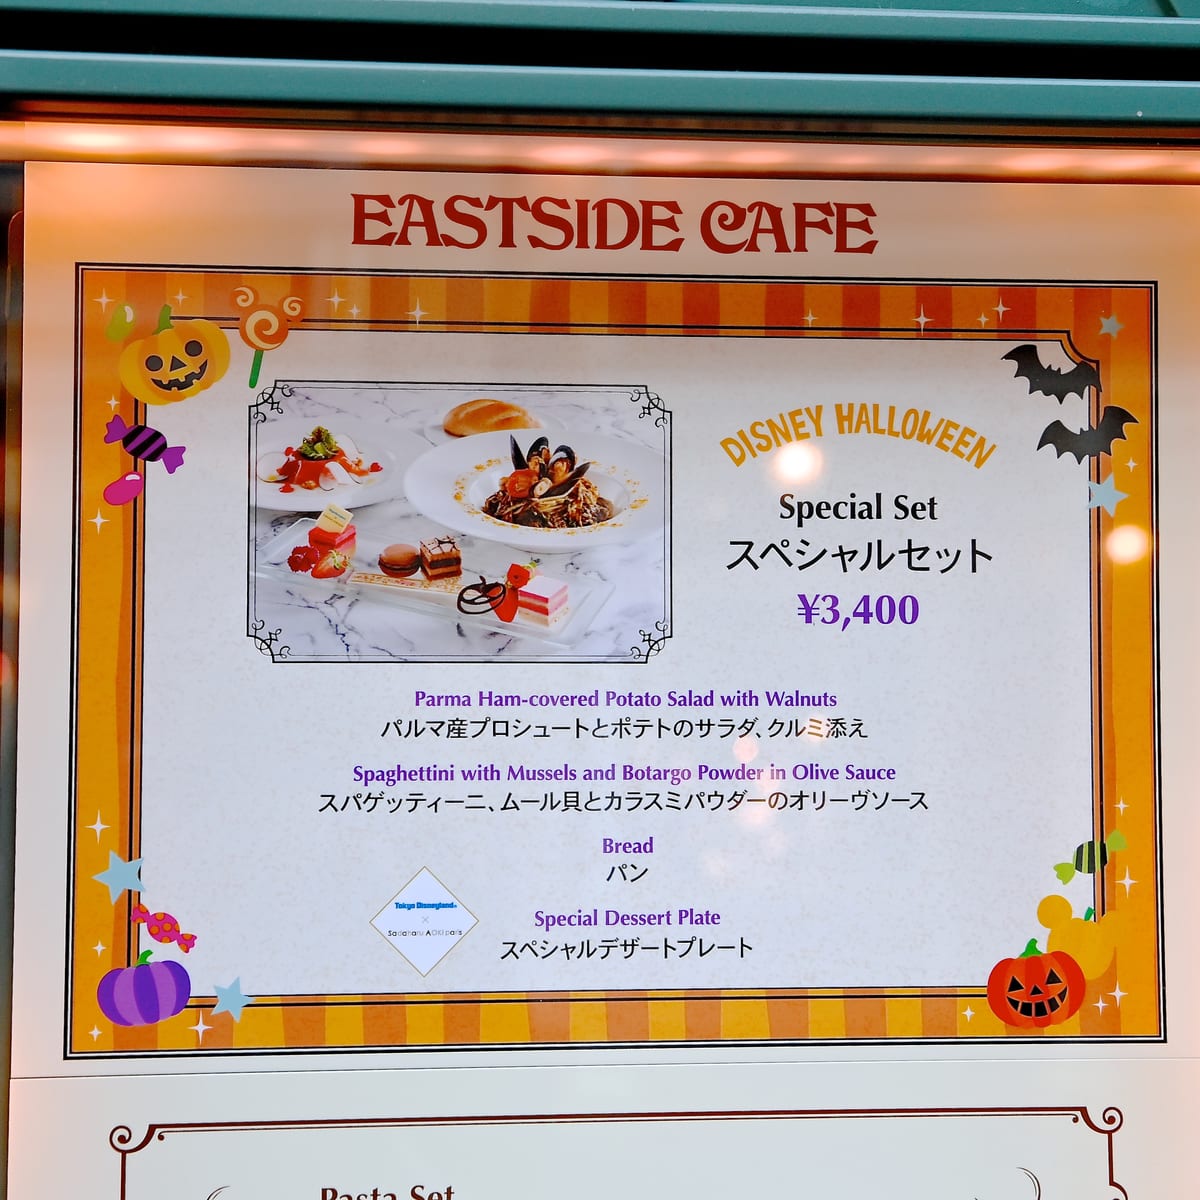 イーストサイド・カフェ“ディズニー・ハロウィーン2021”スペシャルセット「Sadaharu AOKI paris」のコラボレーションメニュー看板